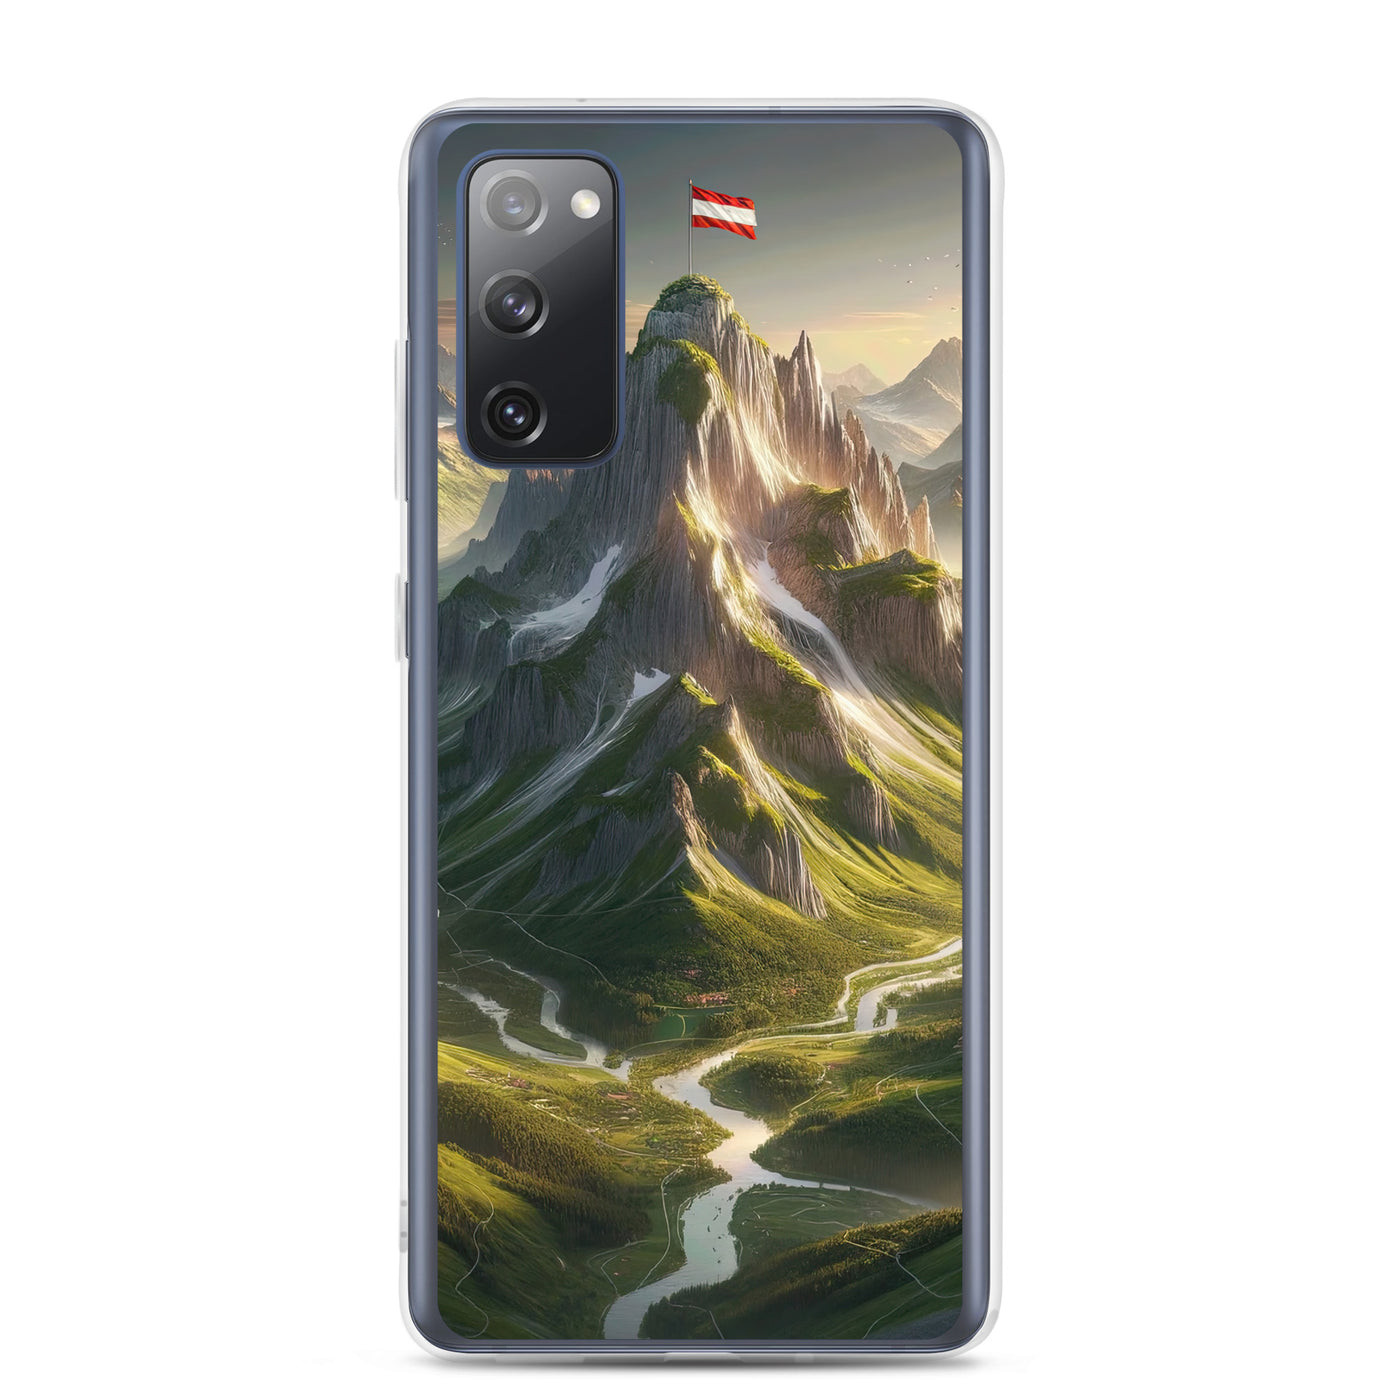 Fotorealistisches Bild der Alpen mit österreichischer Flagge, scharfen Gipfeln und grünen Tälern - Samsung Schutzhülle (durchsichtig) berge xxx yyy zzz Samsung Galaxy S20 FE